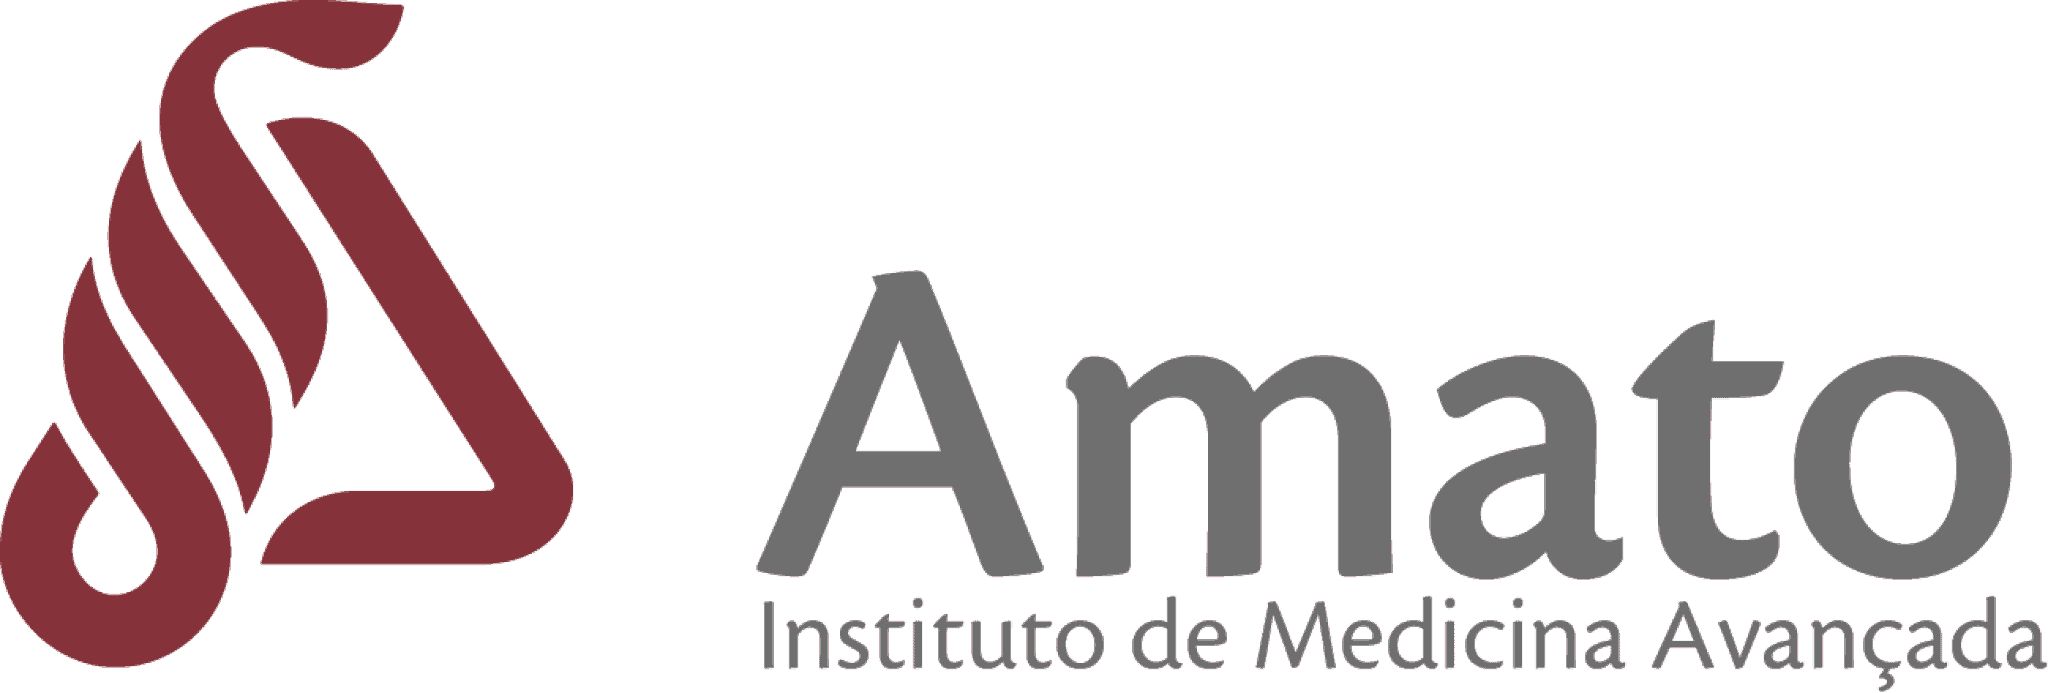 Instituto Amato